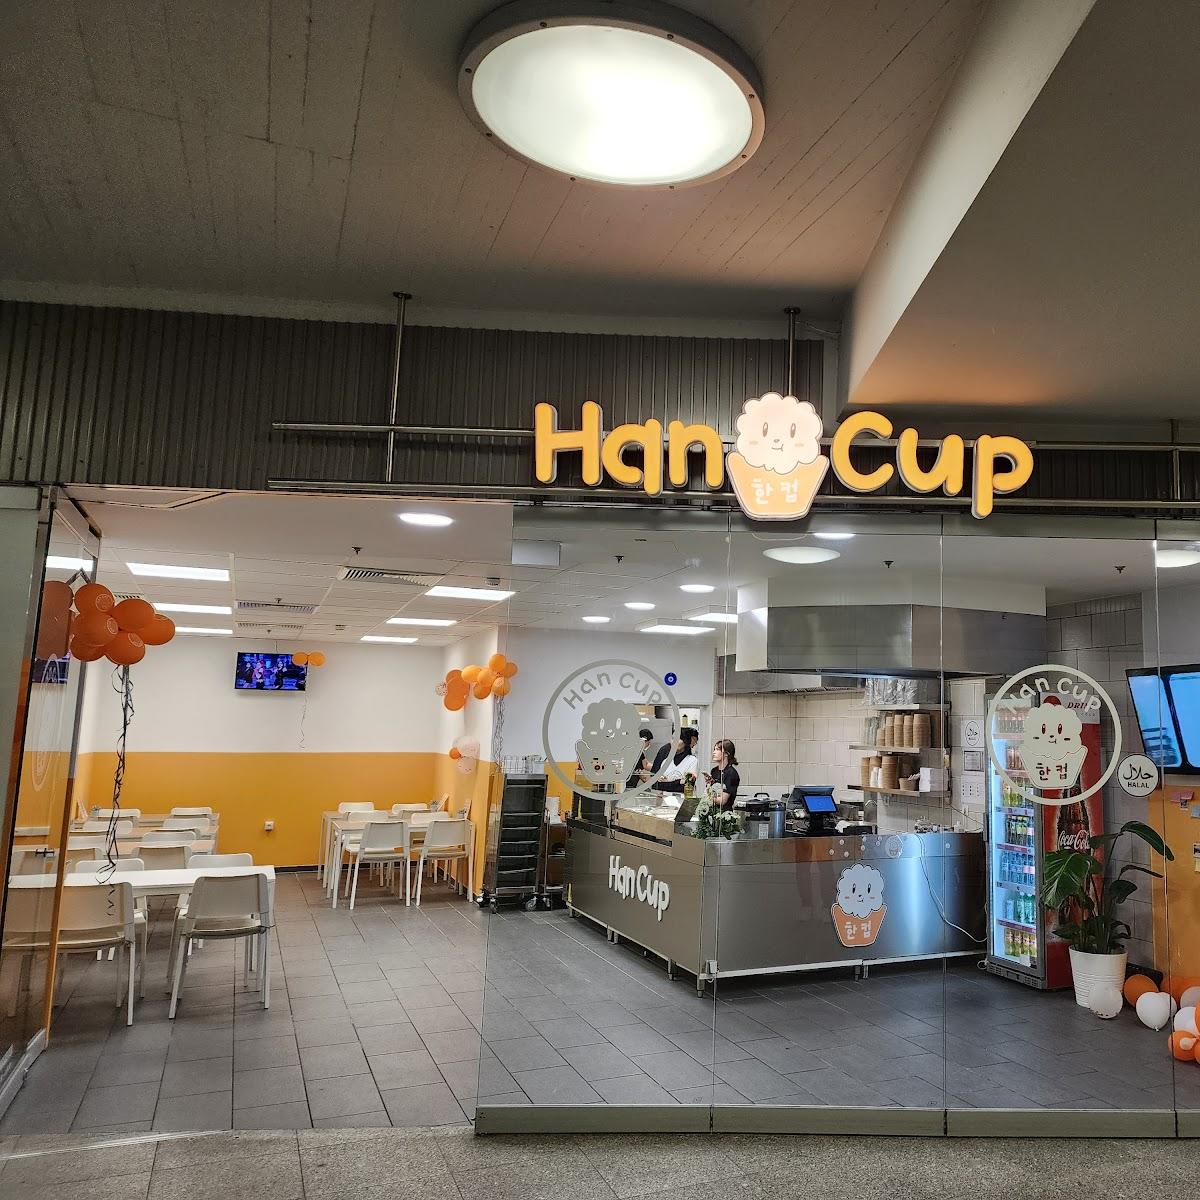 Restaurant "HAN CUP" in Essen